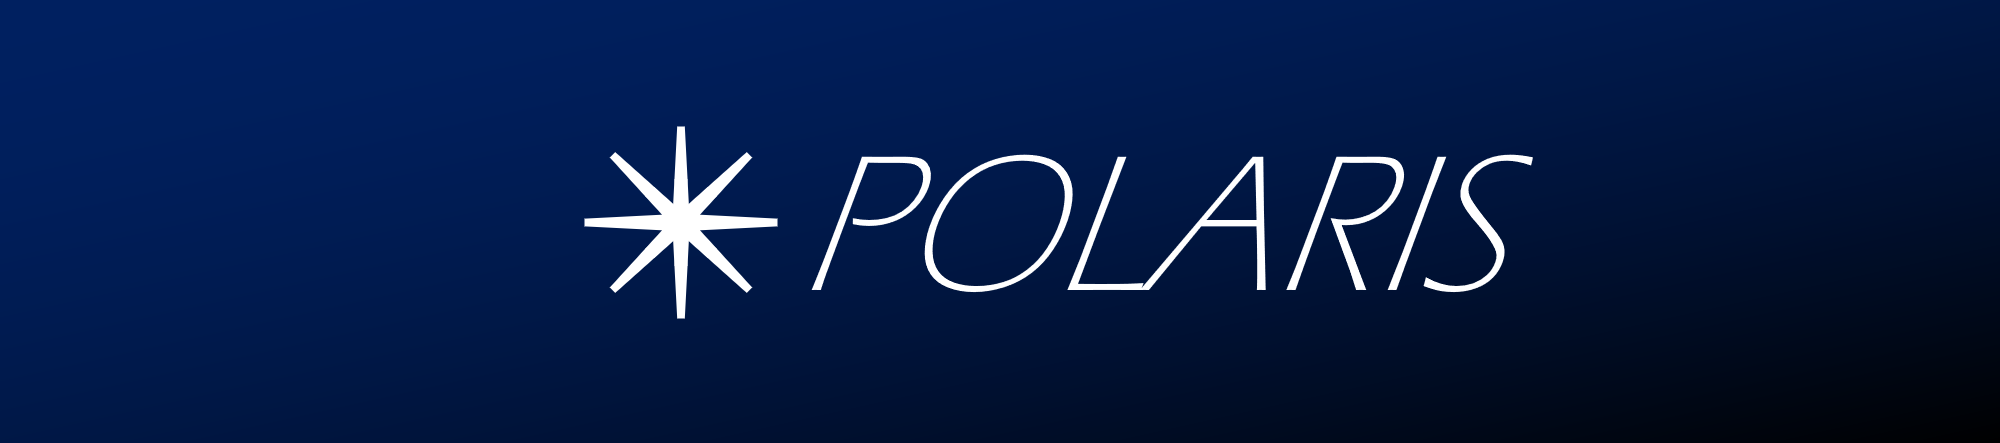 polaris_logo.png